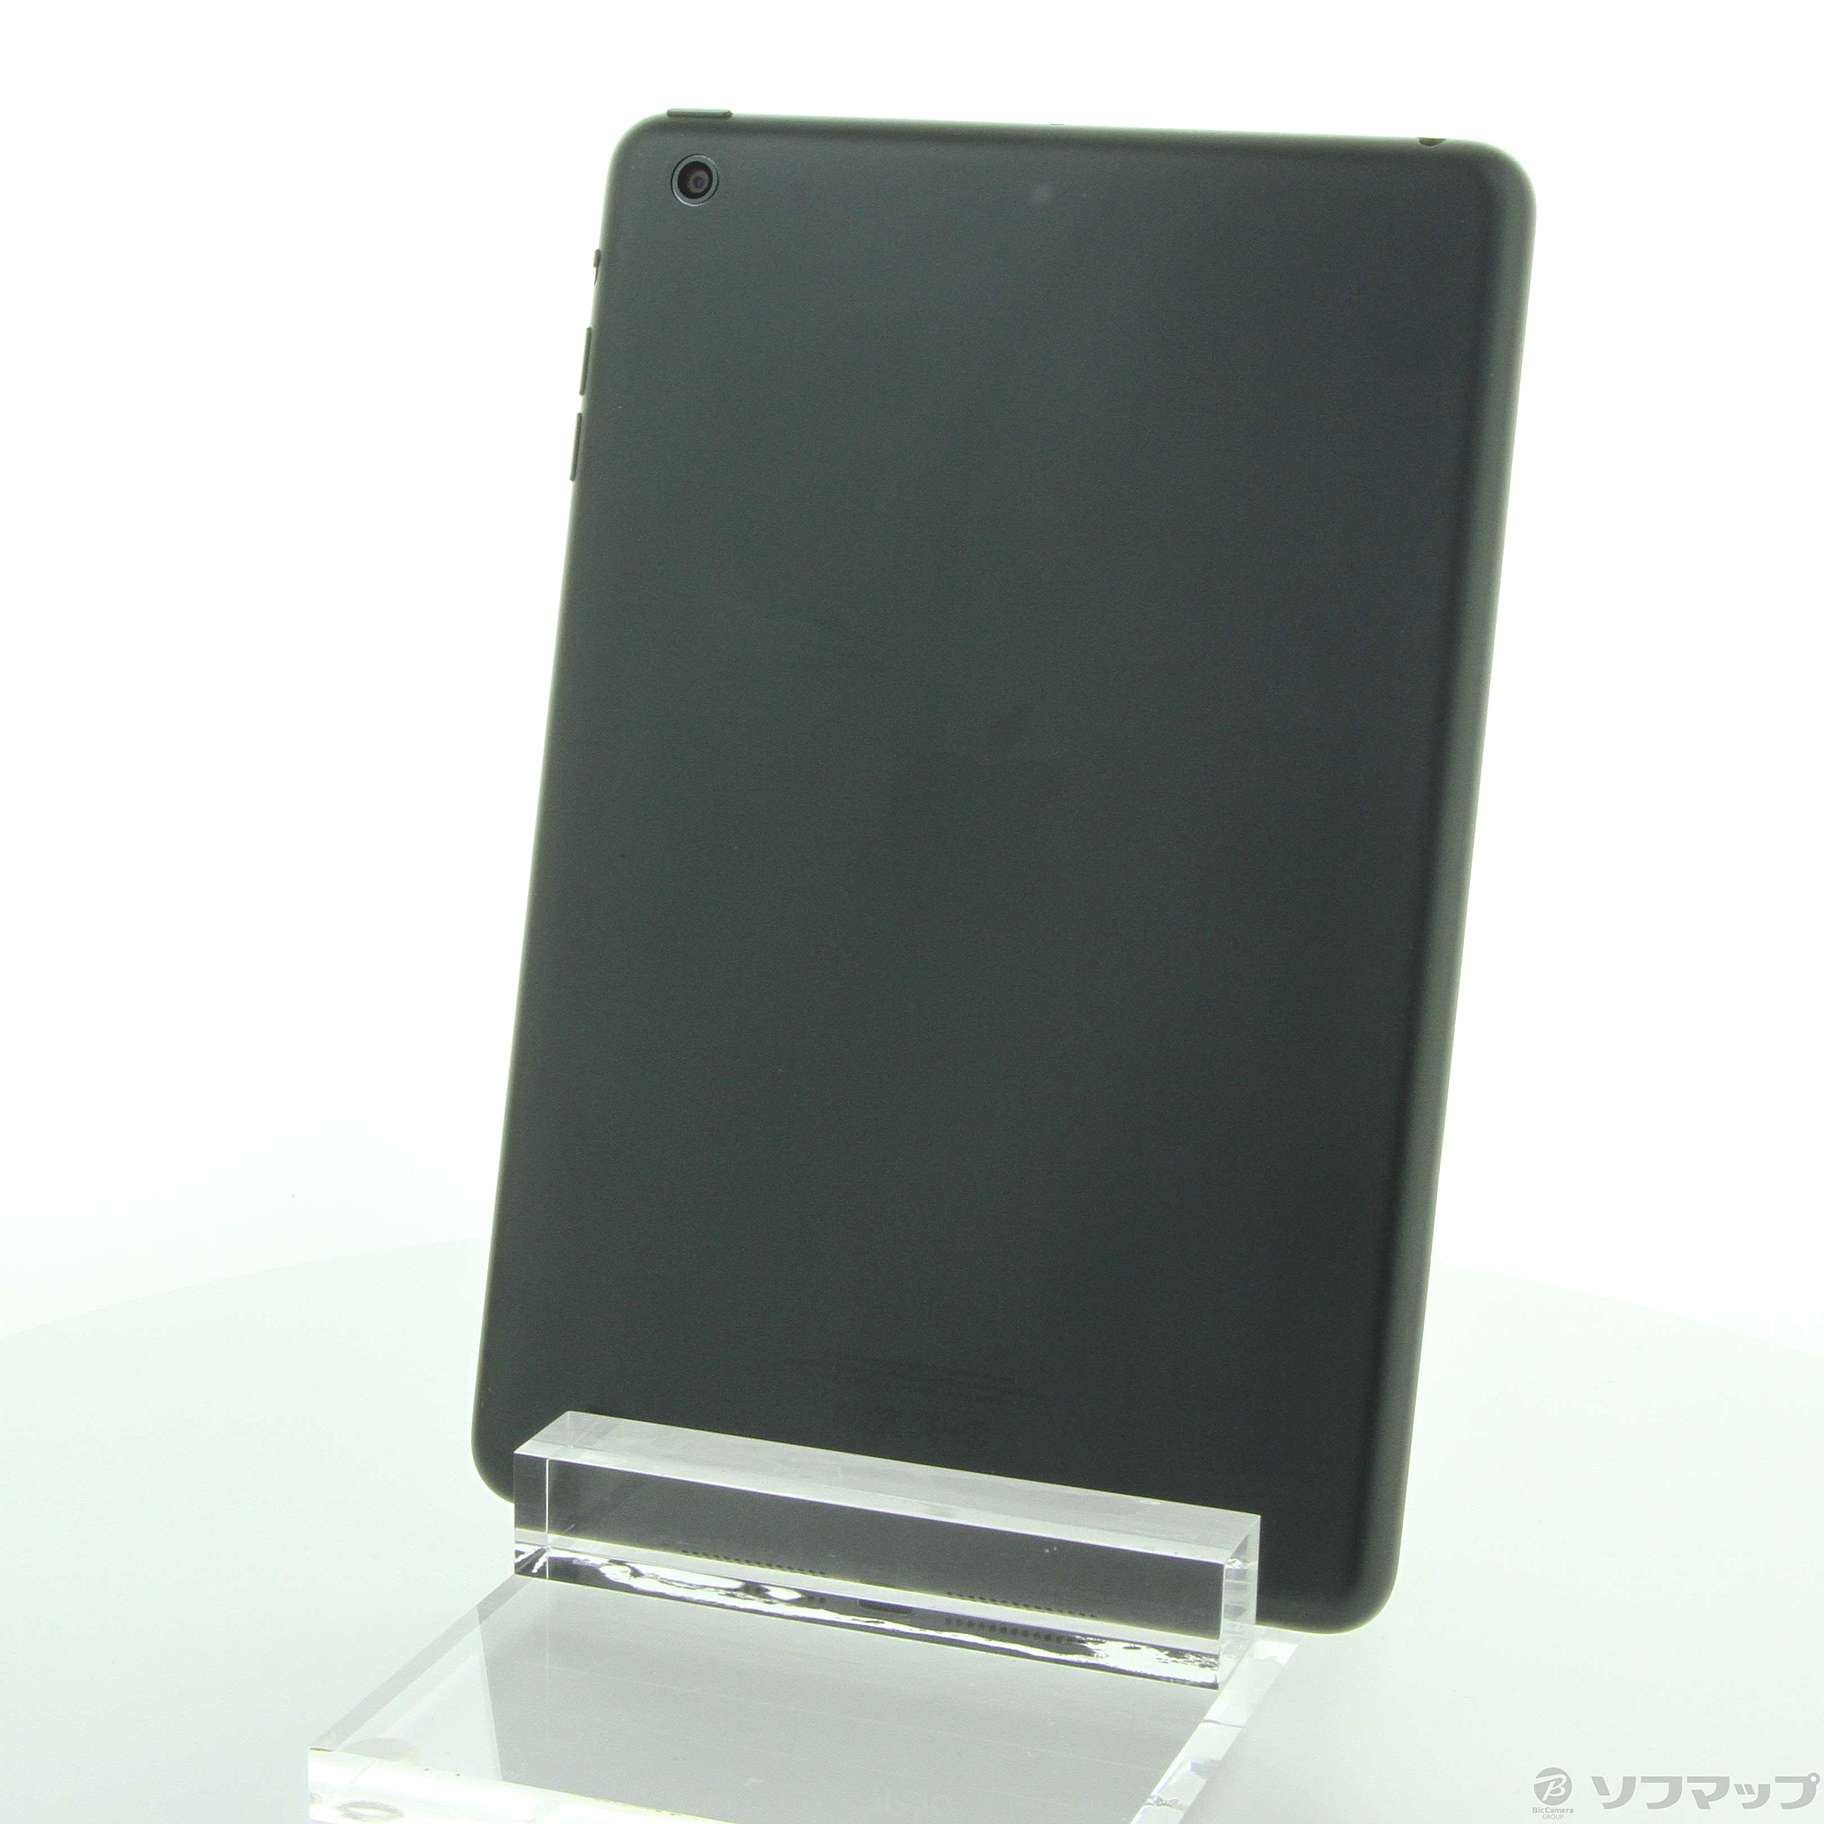 【第1世代】iPad mini Wi-Fi 64GB ブラック MD530J美しい79インチのディスプレイ